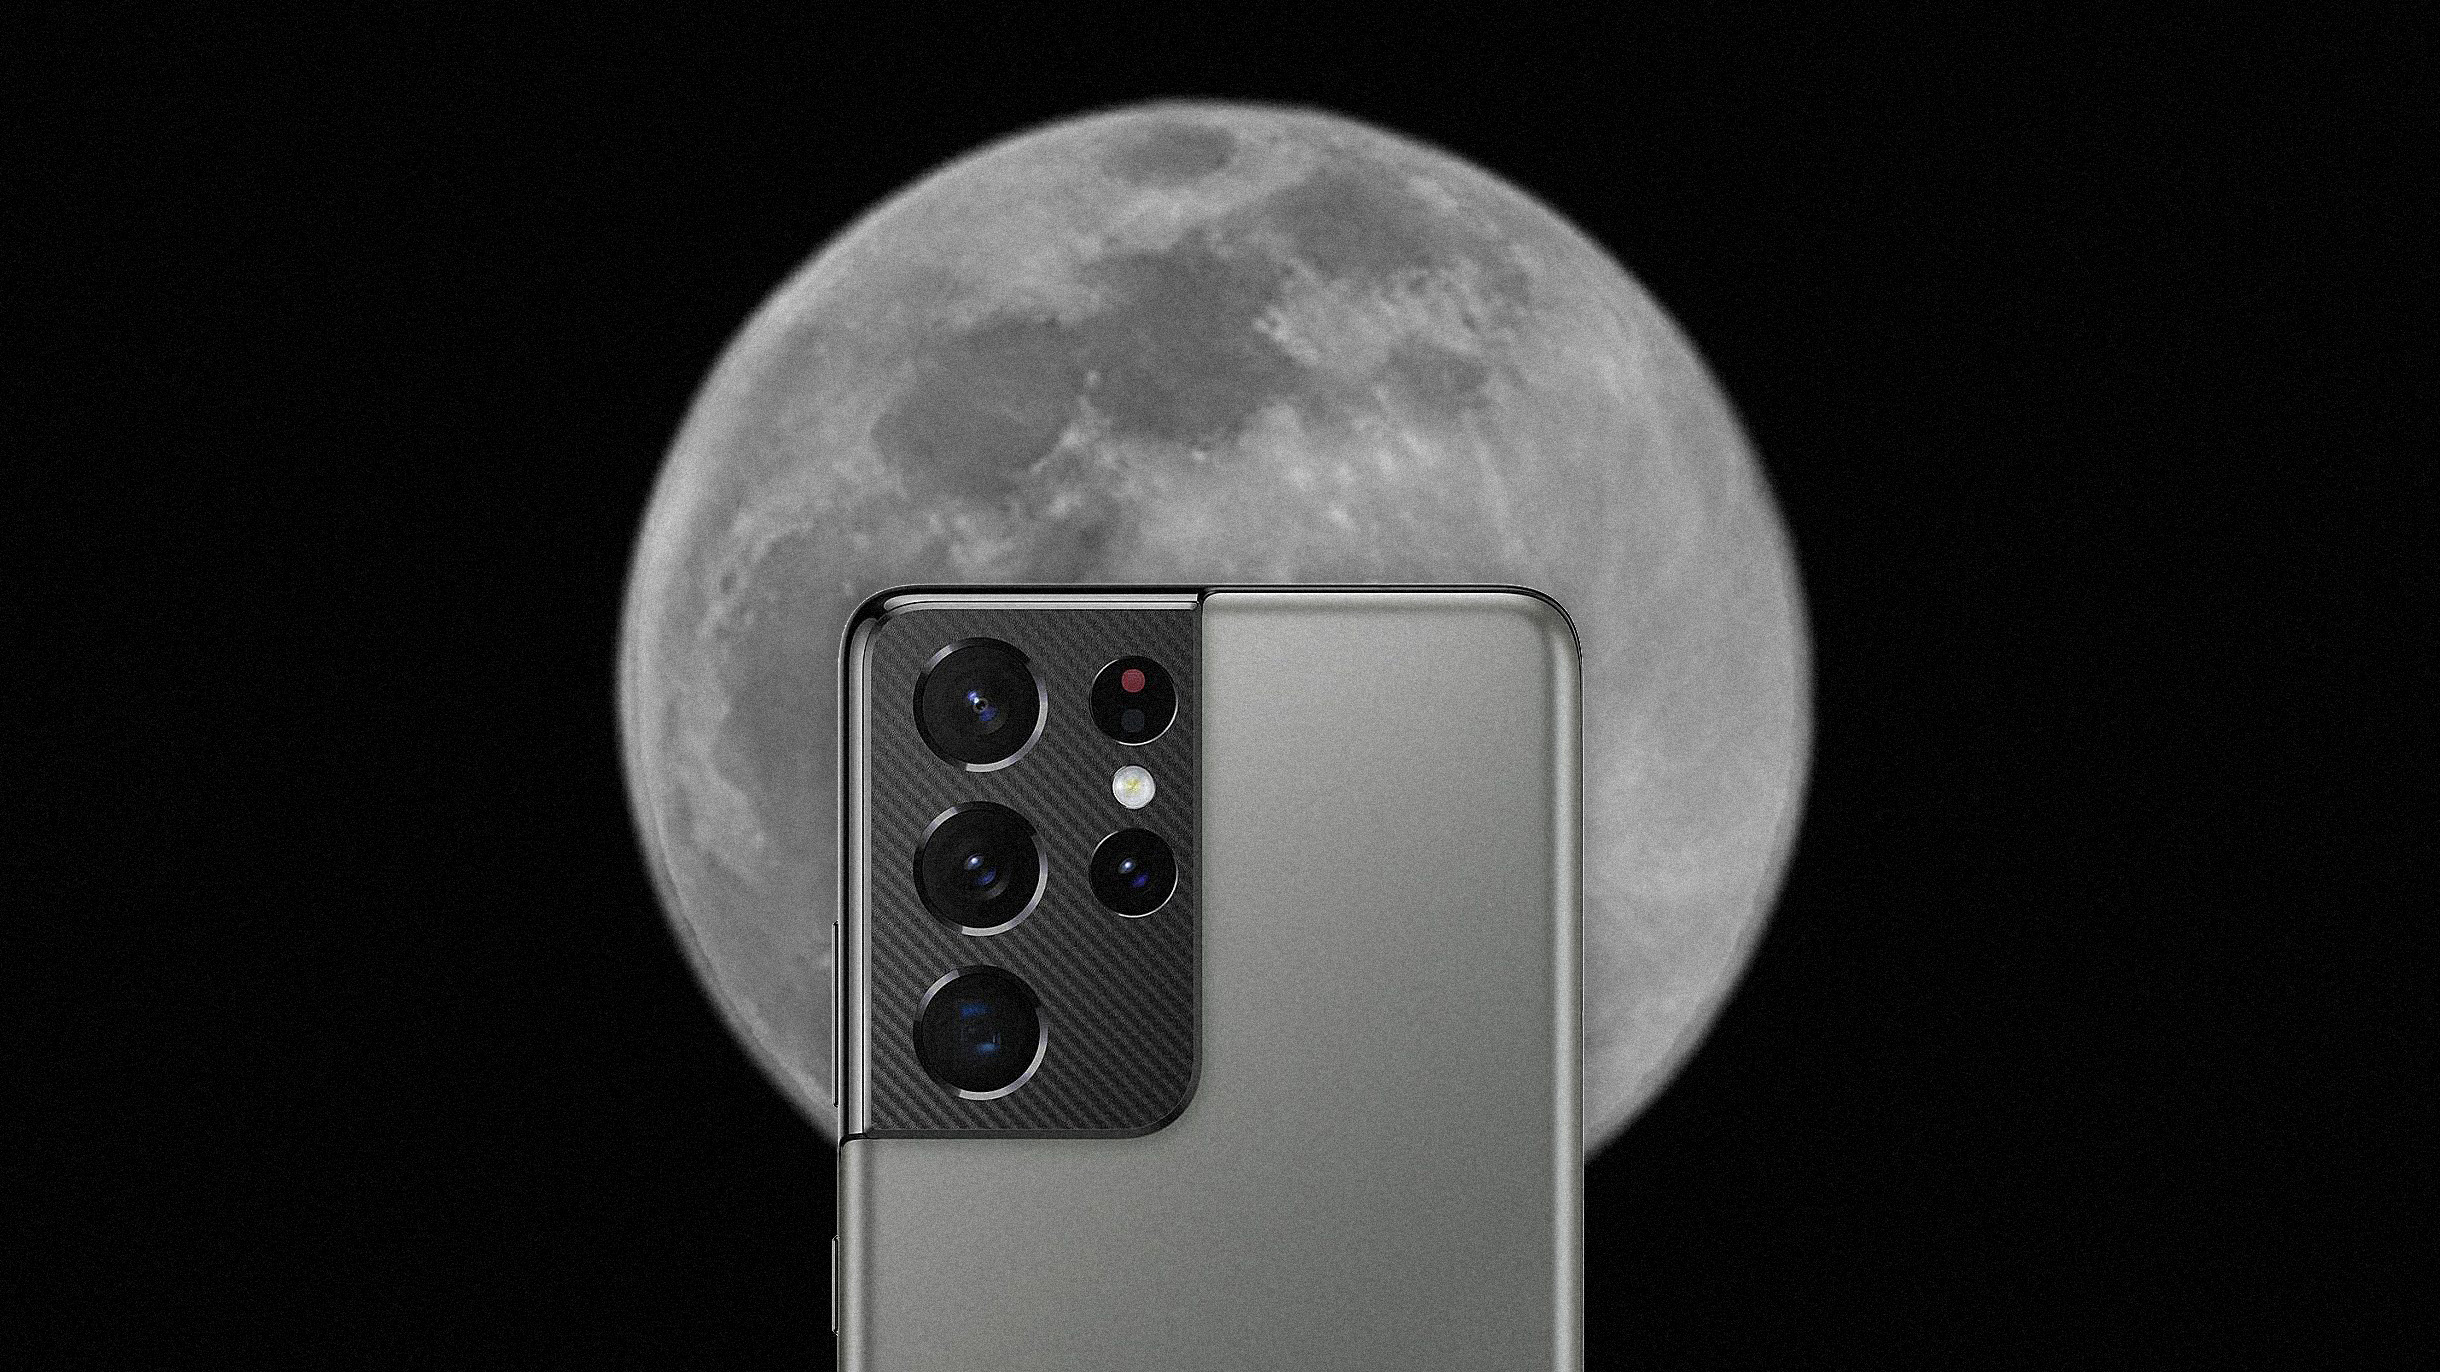 Samsung обвинили в подделывании фото луны в режиме зума — так ли это на самом деле